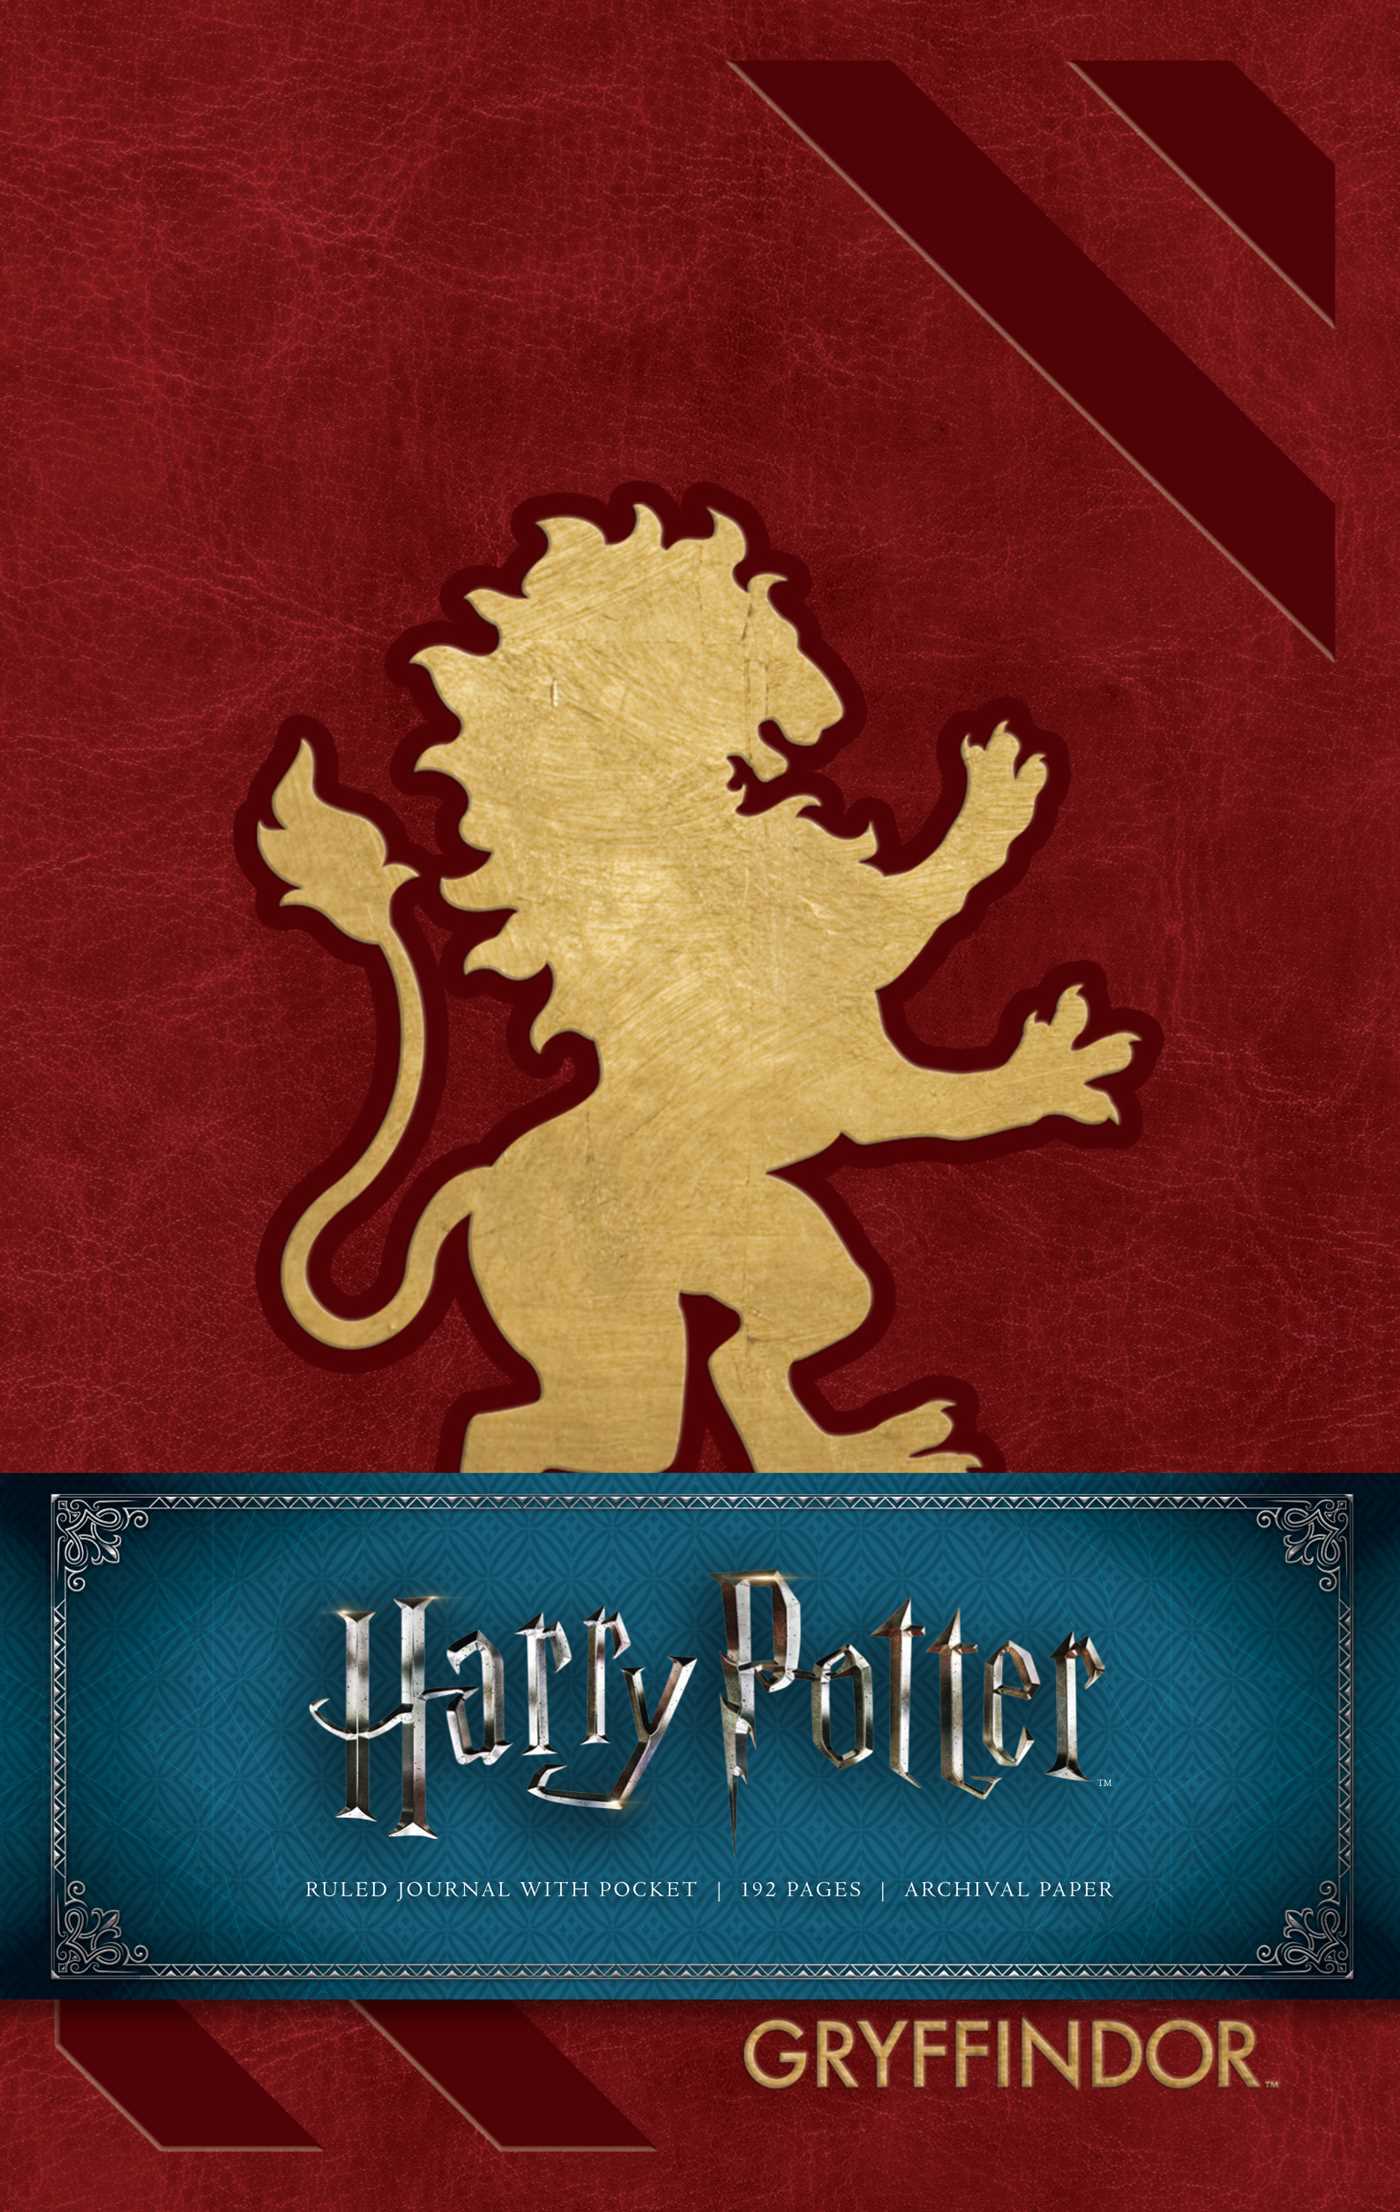 Harry Potter Gryffindor Hardcover Ruled Journal hardcover